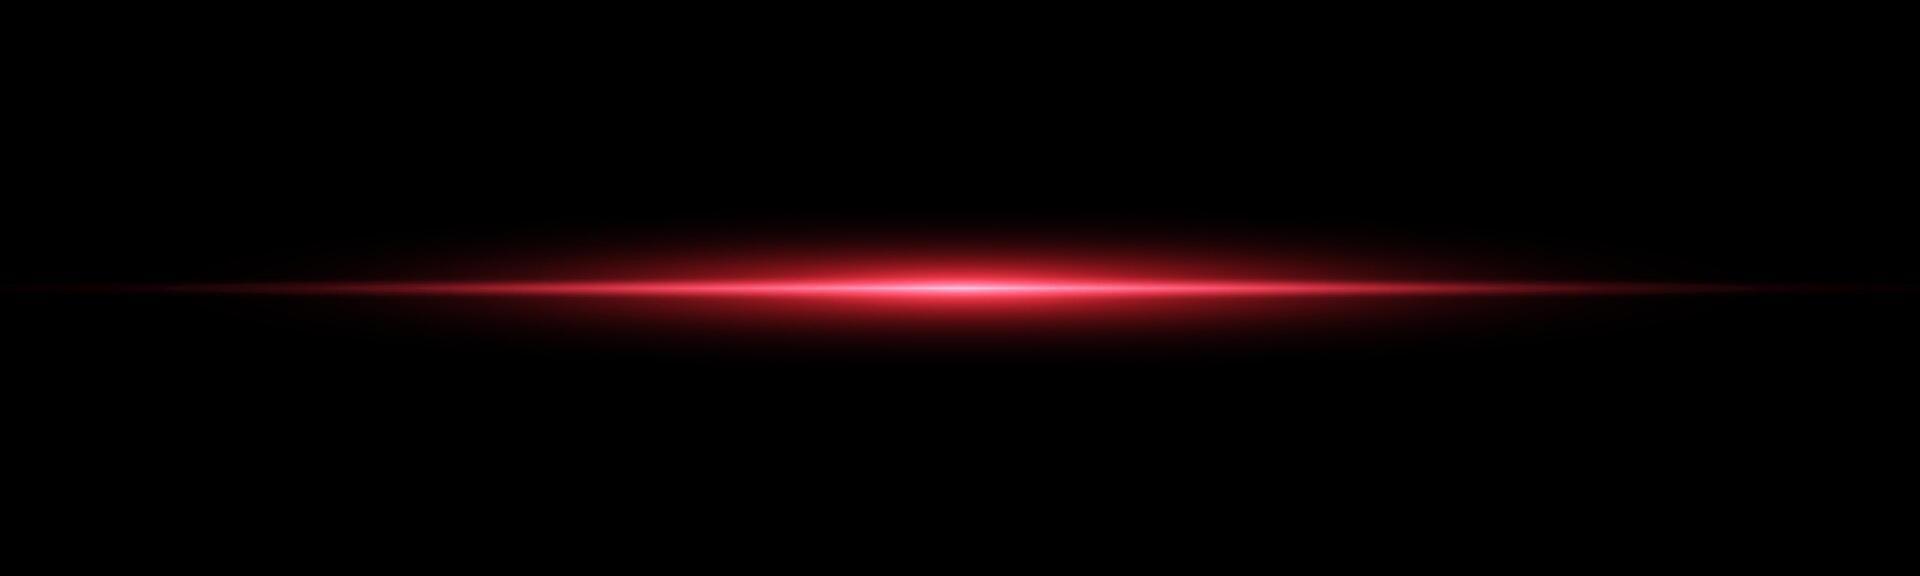 Red horizontal laser beam. Light lensflare. Red glow flare light effect. illustration. vector